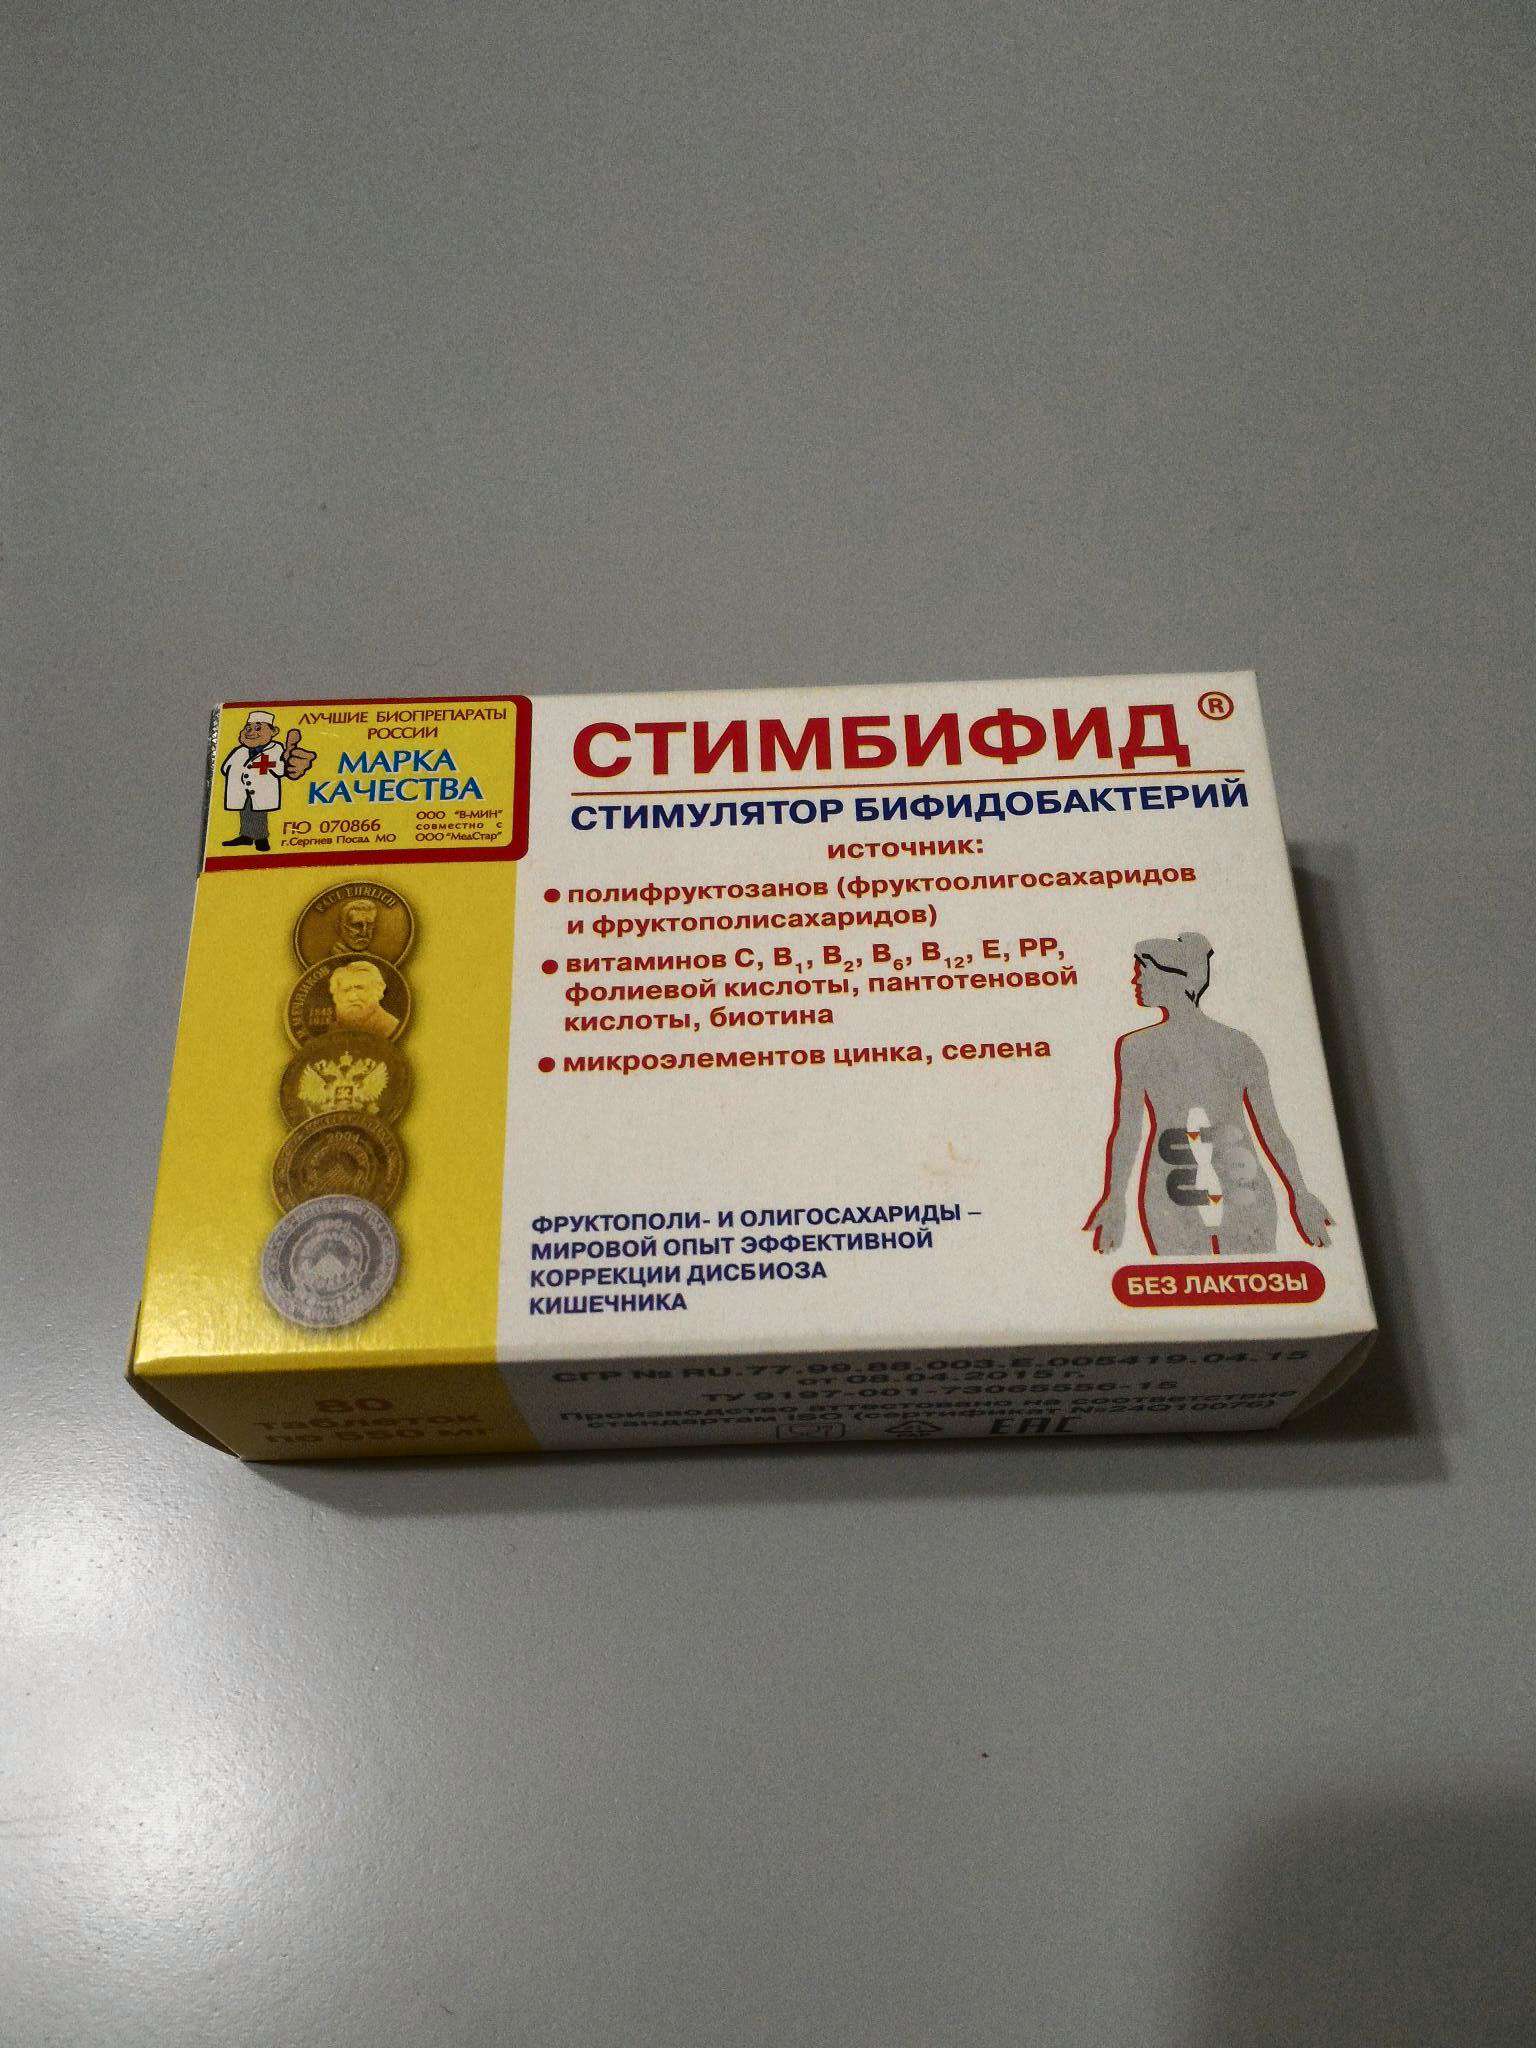 Стимбифид Плюс Купить В Нижнем Новгороде